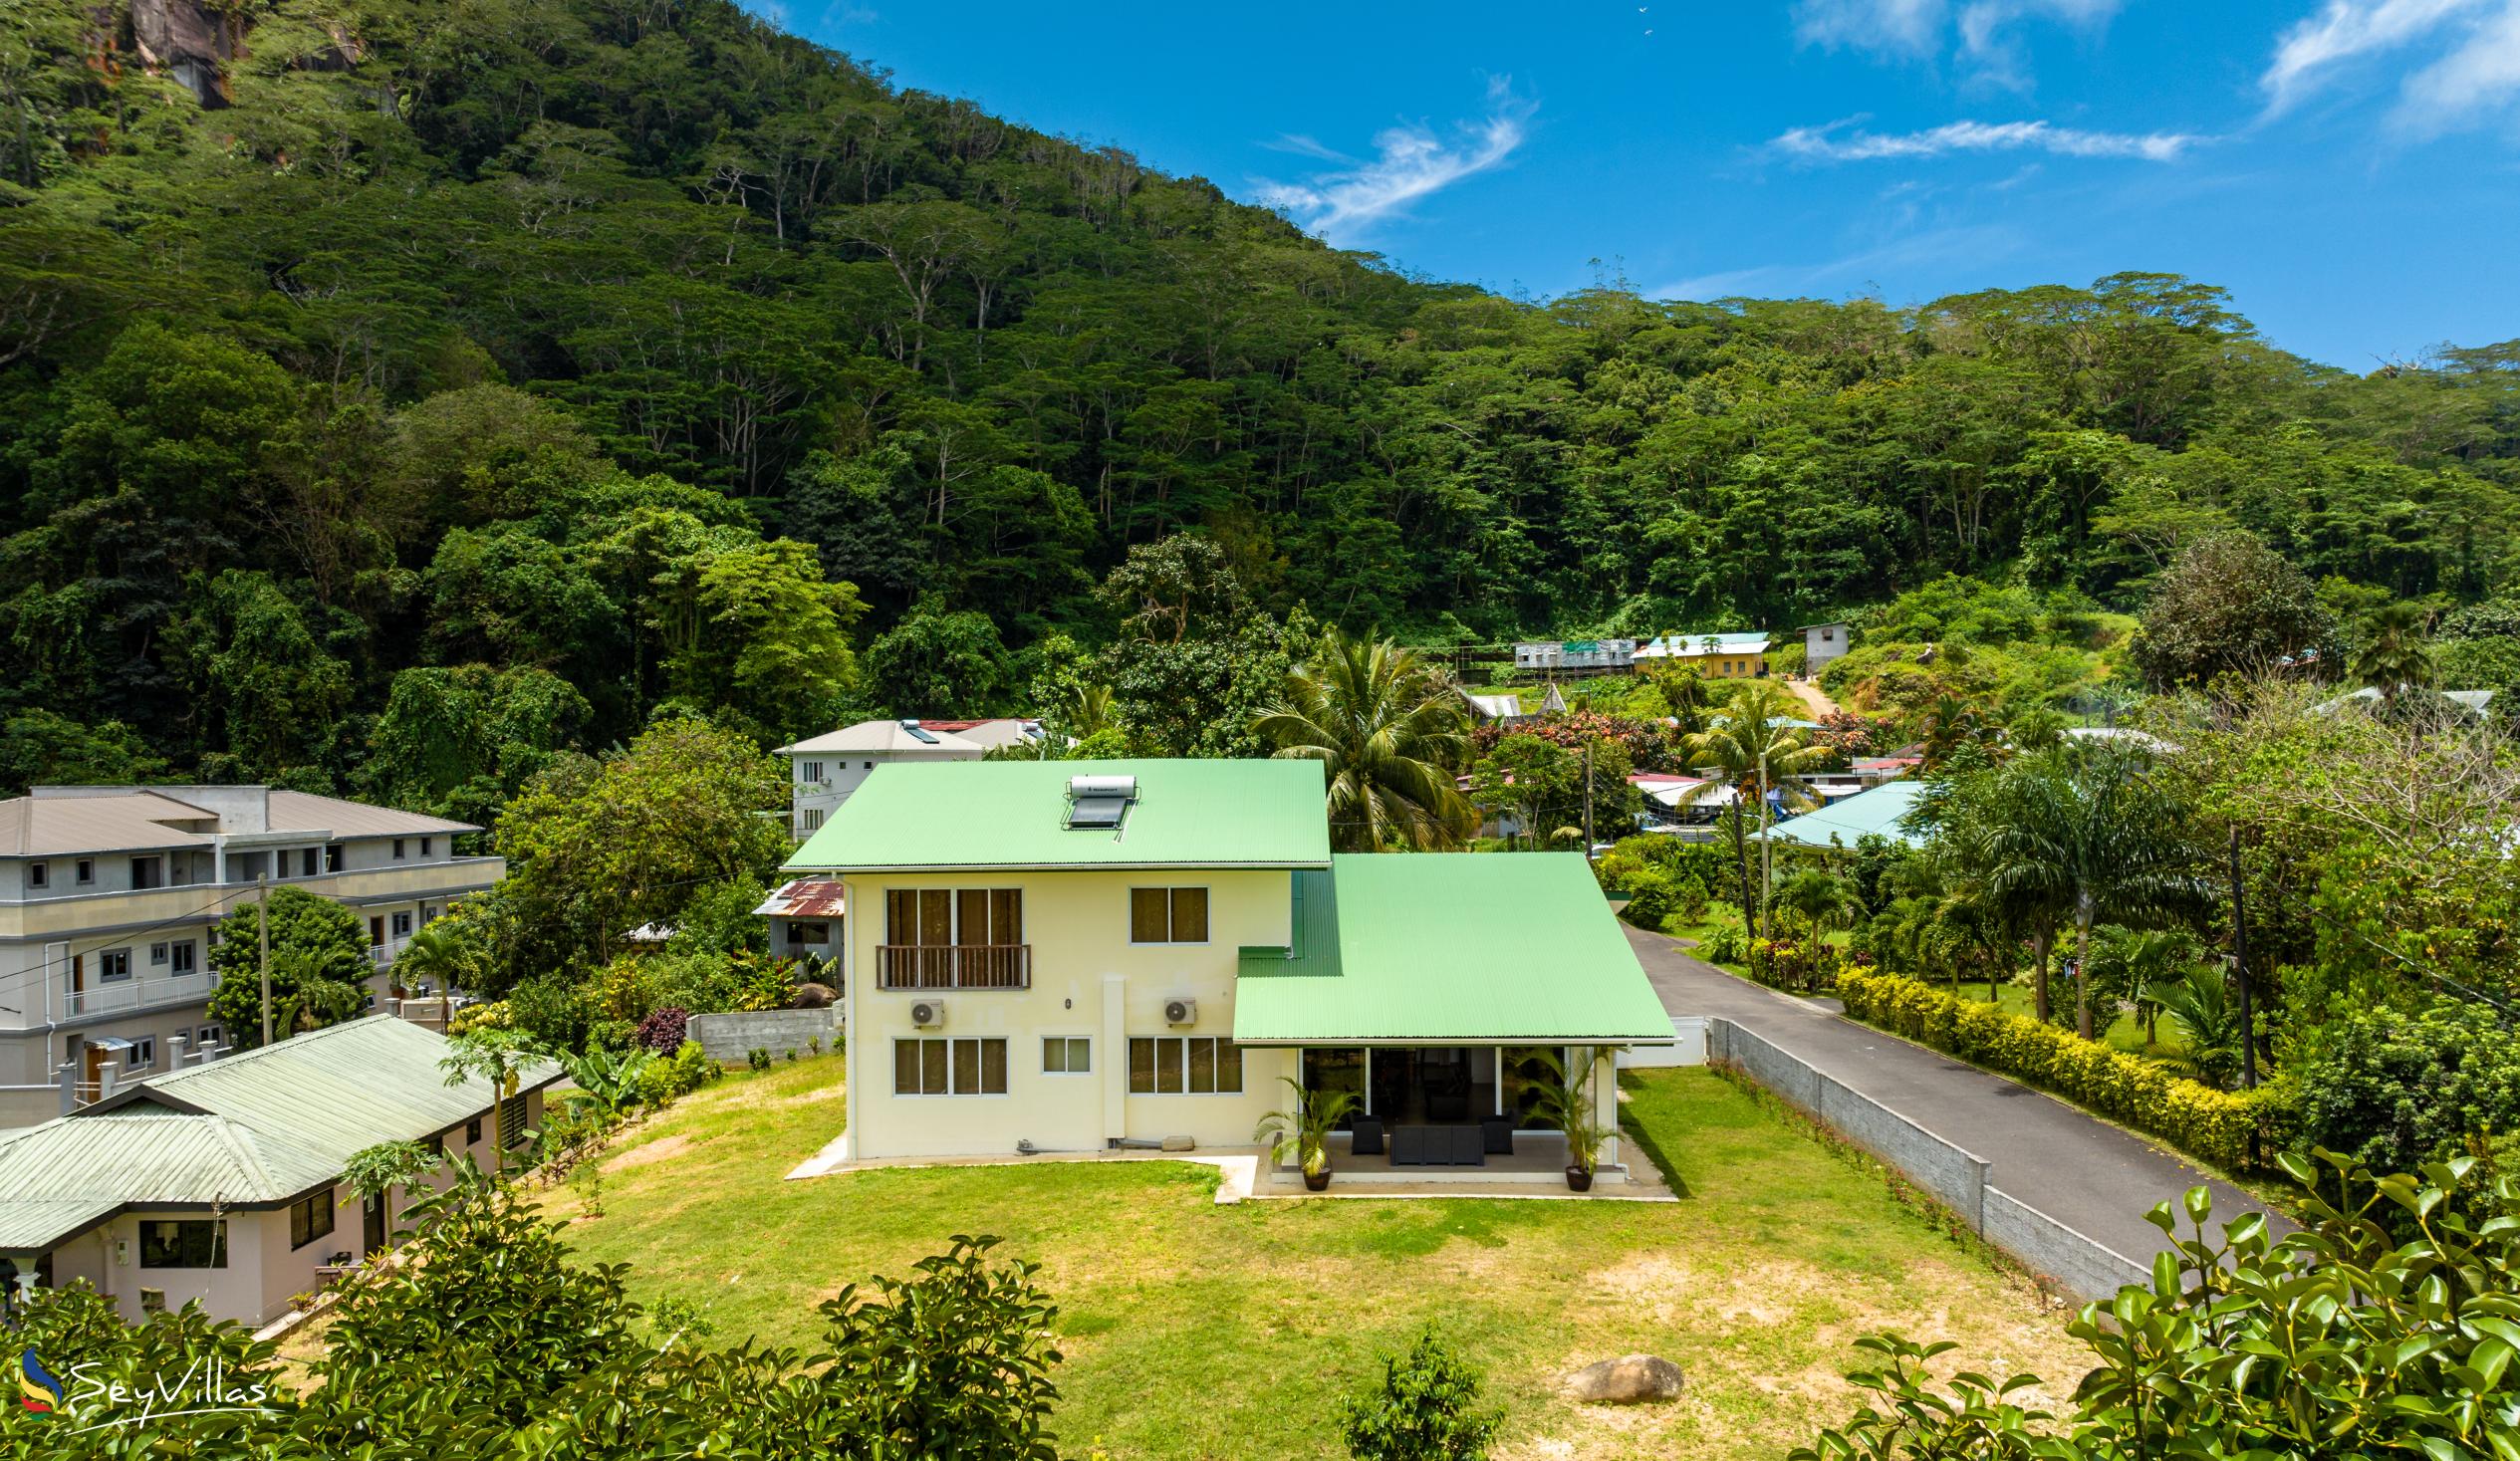 Foto 5: Maison Dora - Extérieur - Mahé (Seychelles)